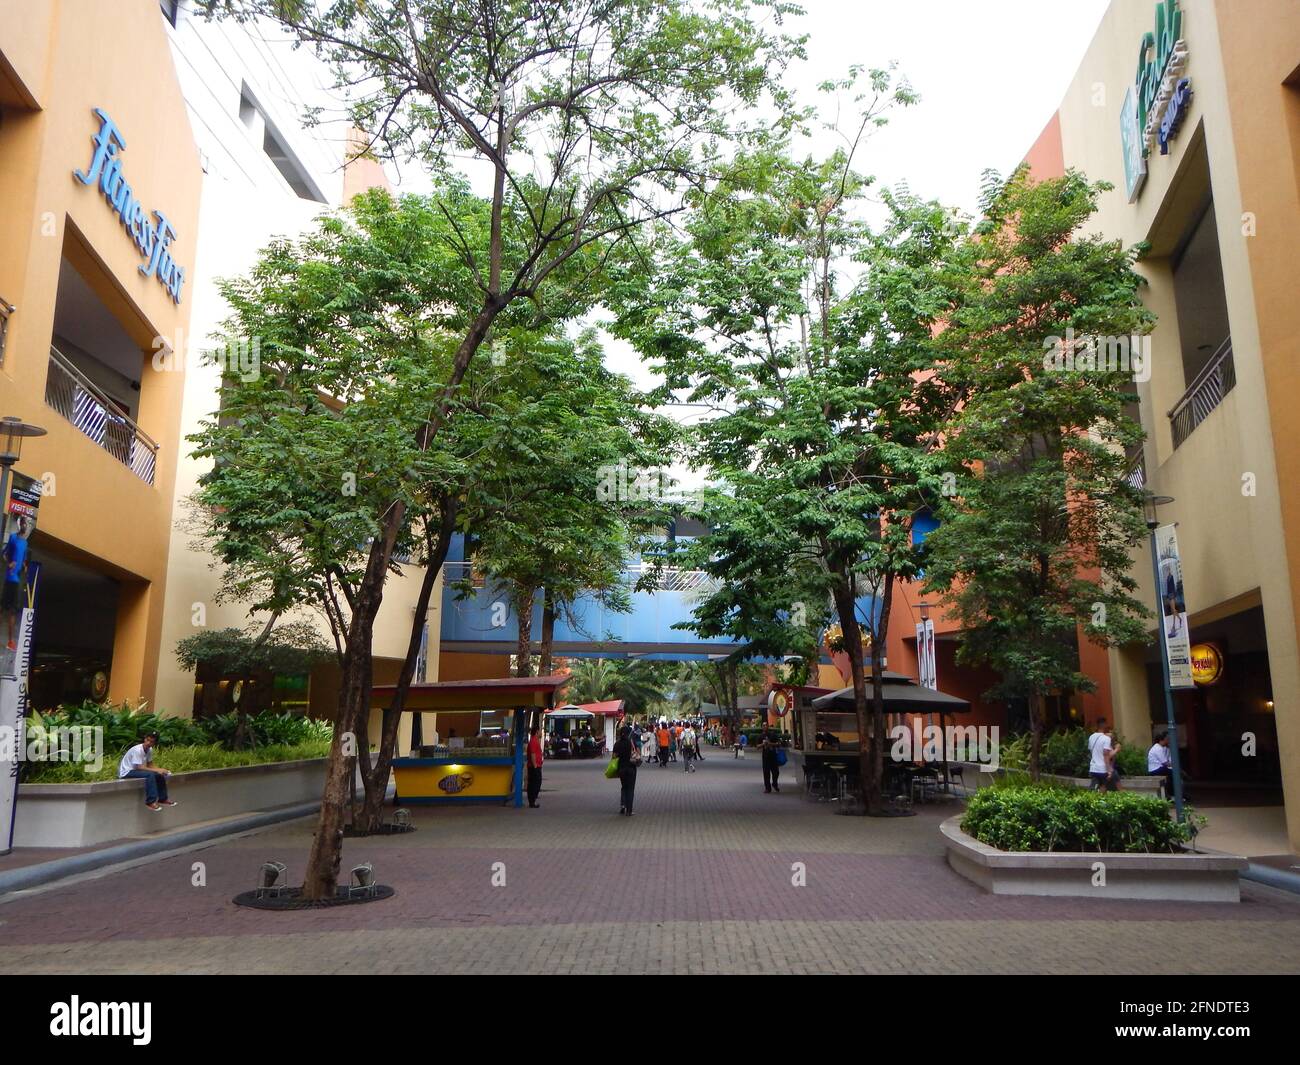 Gli amanti dello shopping si siedono e camminano intorno al Mall of Asia, Metro Manila, Filippine Foto Stock